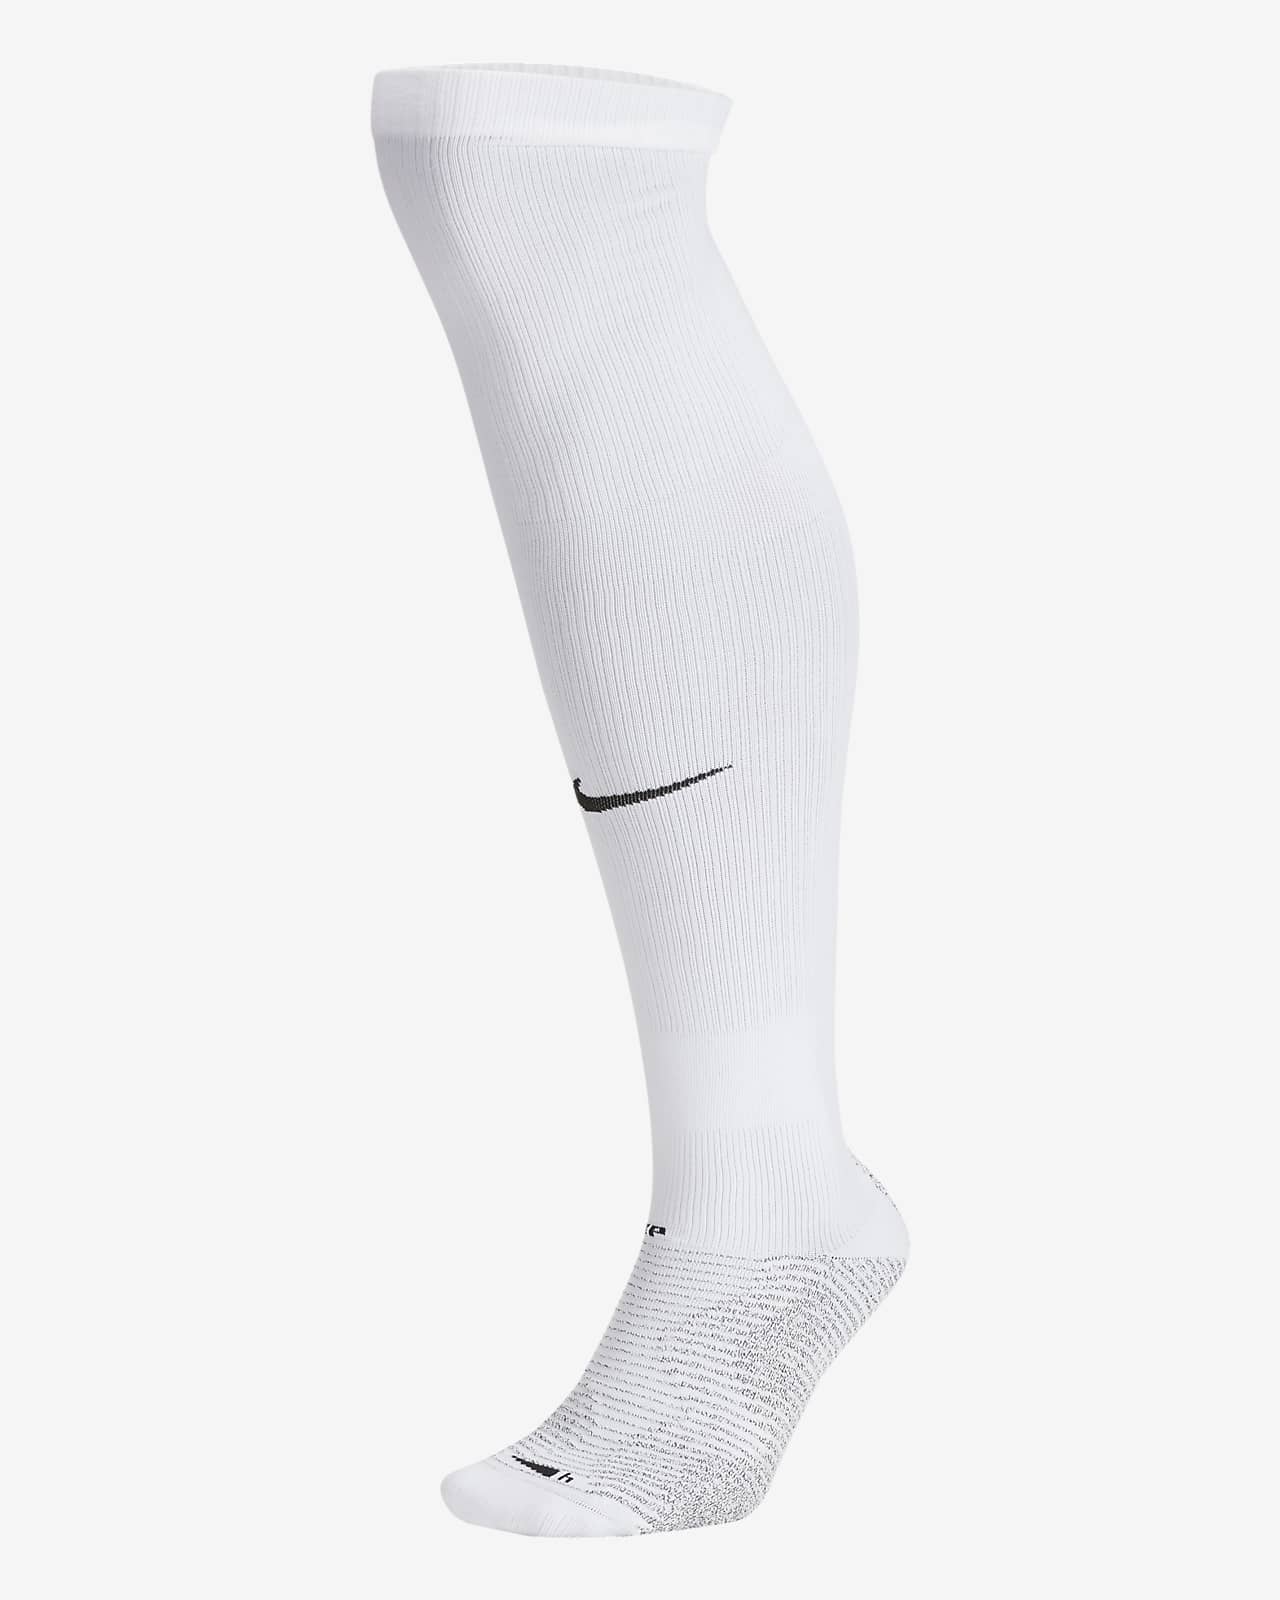 white nike tall socks